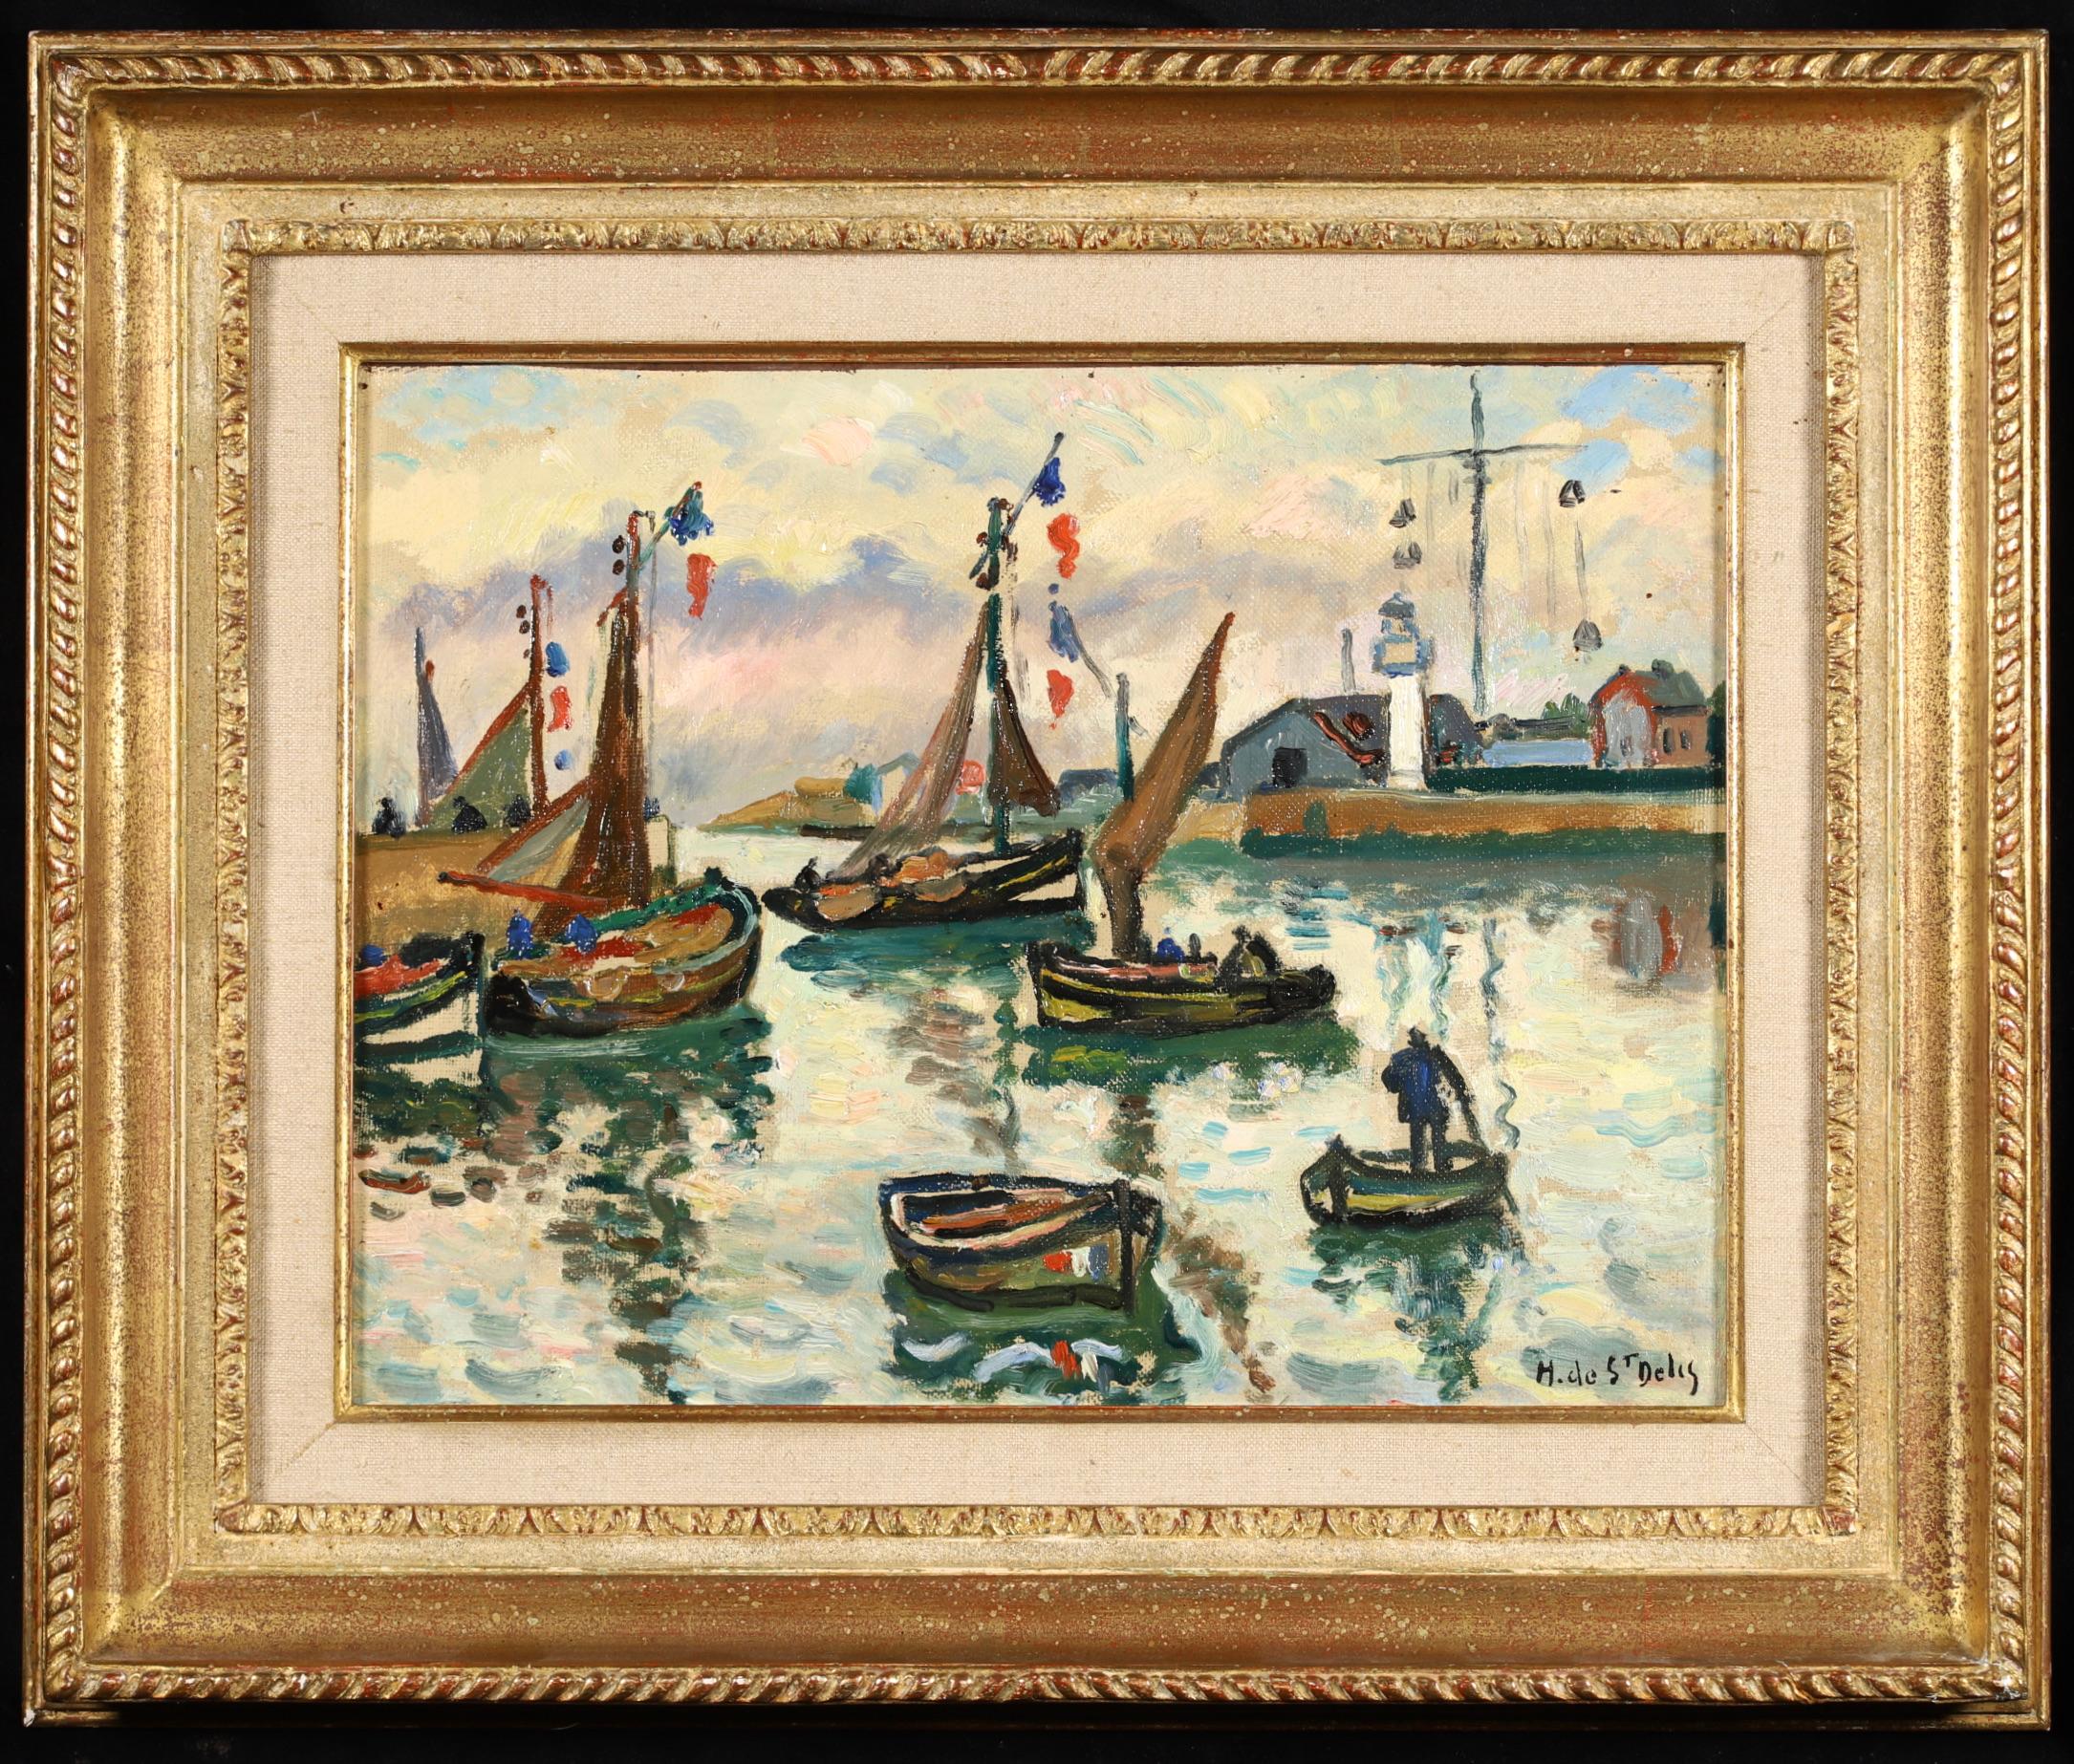 Landscape Painting Henri Liénard de Saint-Délis - The Harbour at Honfleur - Post Impressionist Seascape Oil - Henri de Saint-Delis